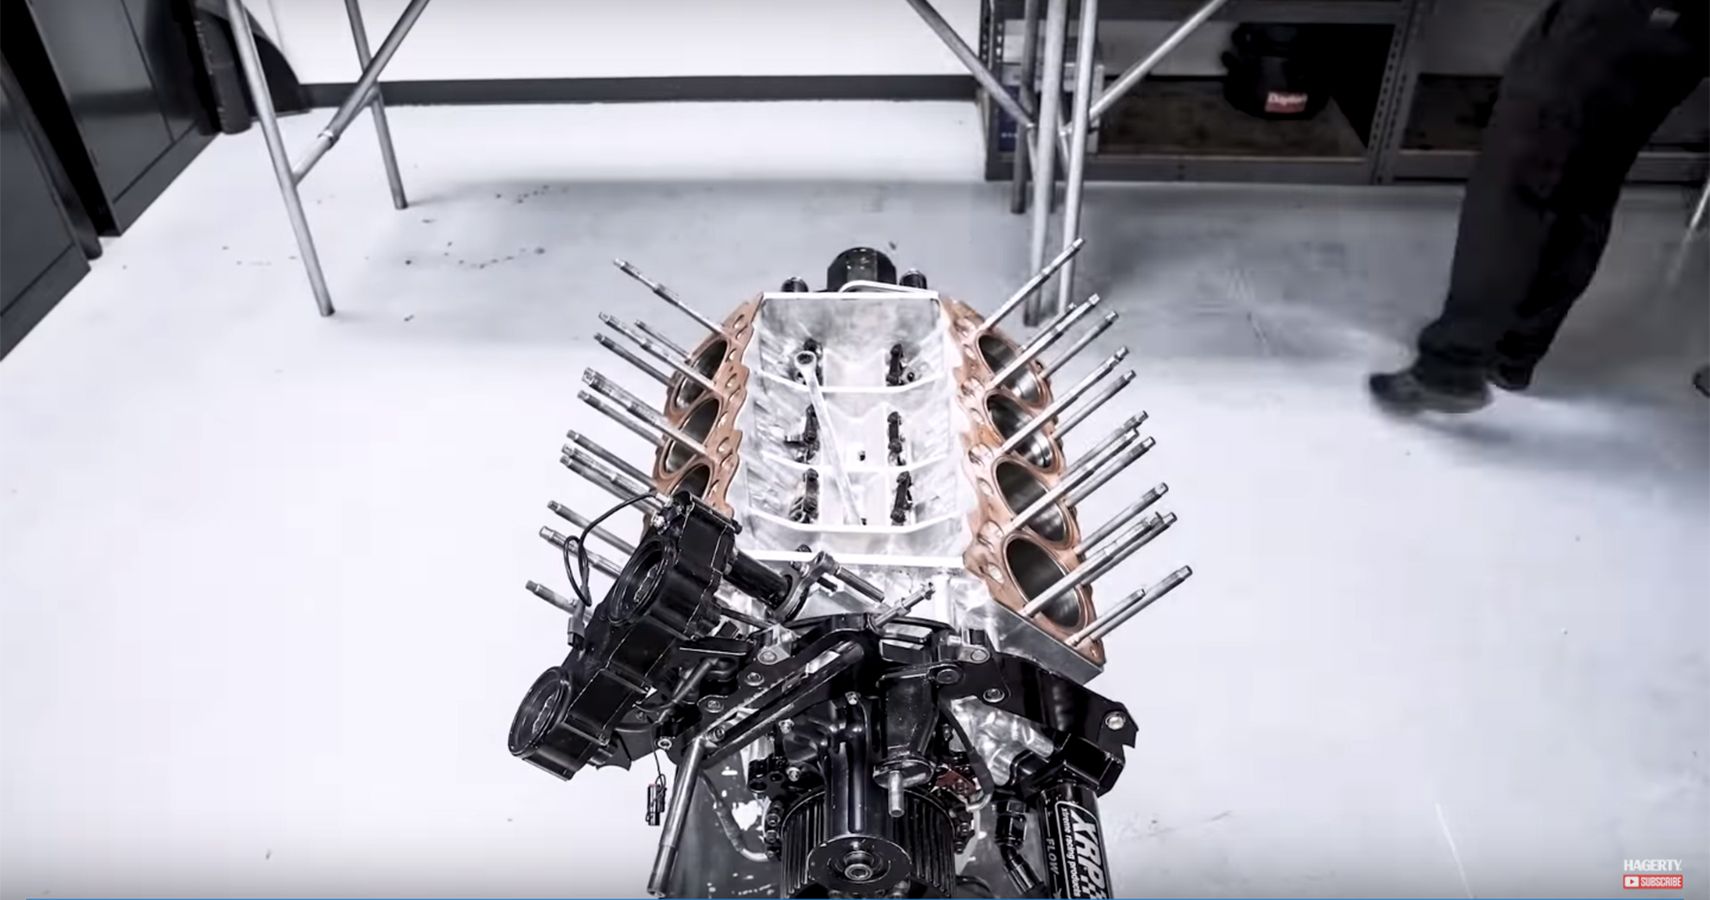 Top Fuel Dragster V8 Engine Disassembled